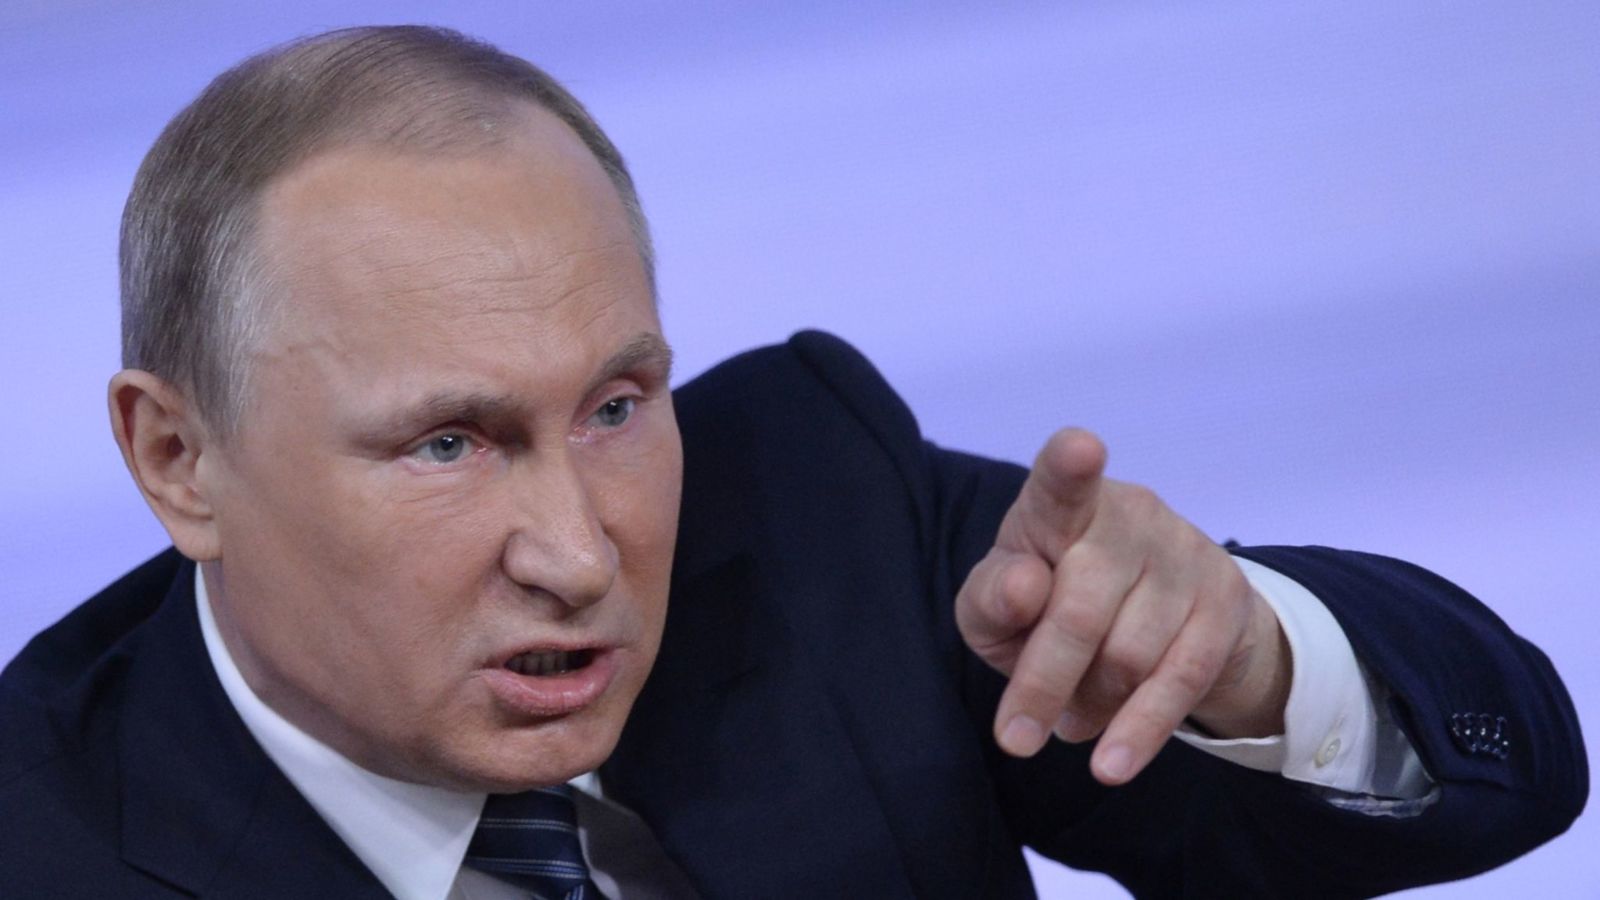   بوتين:«داعش» لا يزال قادرًا على شن هجمات في مناطق مختلفة بالعالم رغم هزيمته